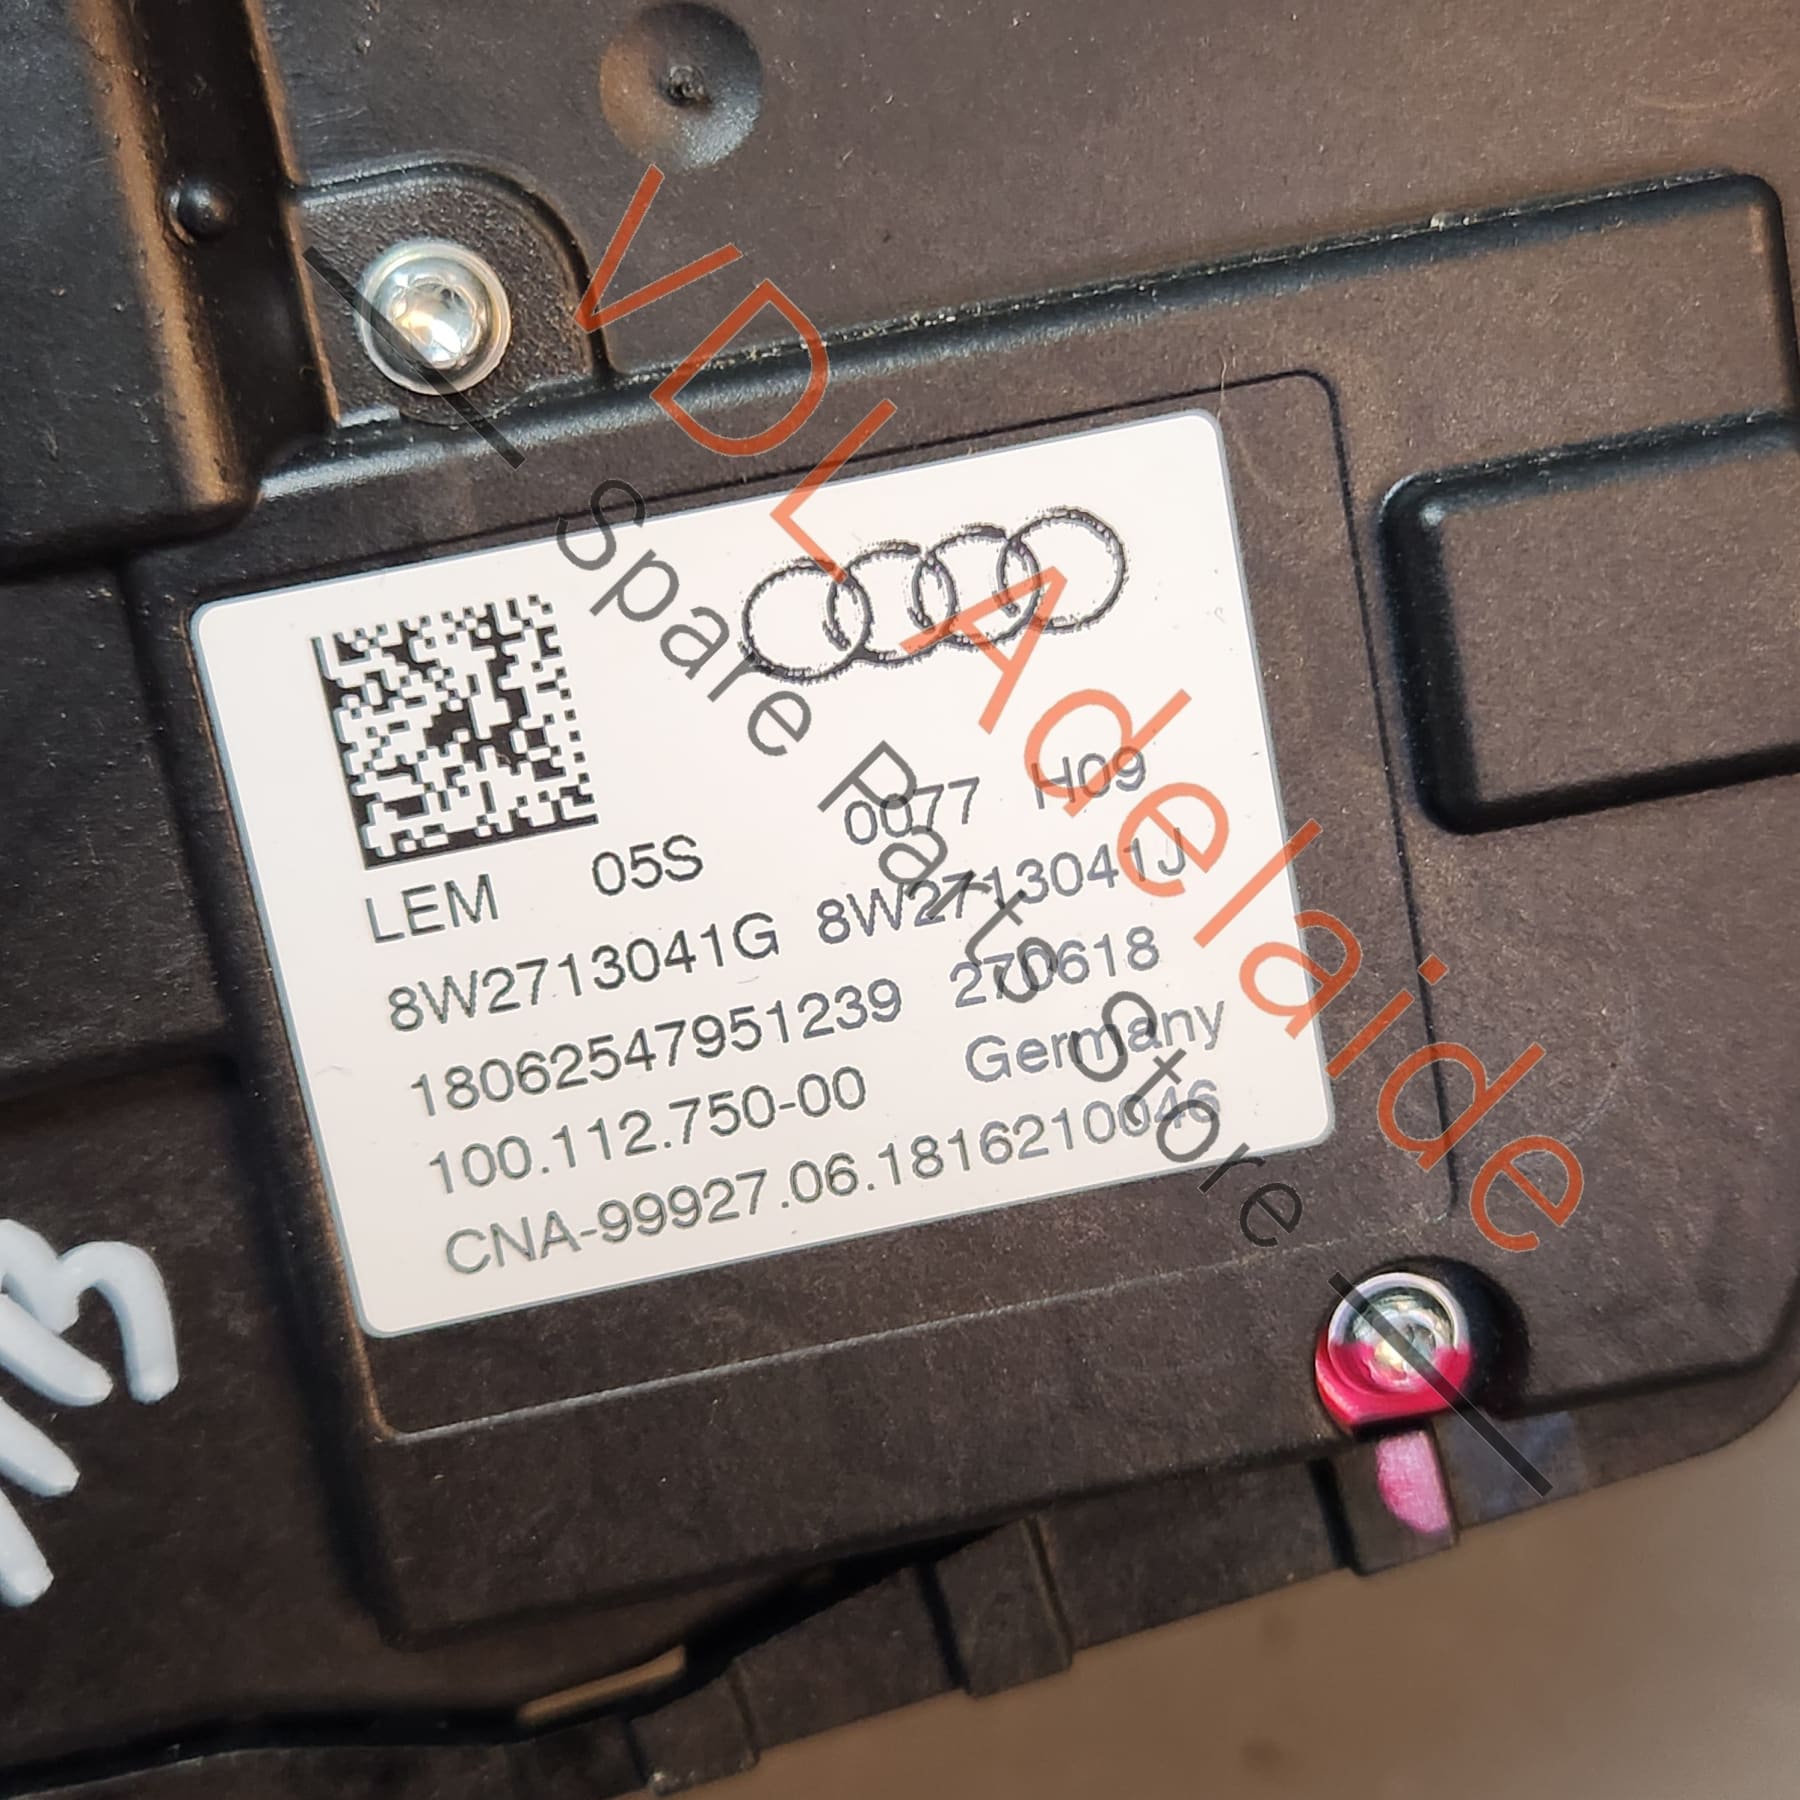 Audi A4 B9 A5 F5 Gear Selector Mechanism Switch Lever RHD 8W2713041G 8W2713041Q 8W2713041G